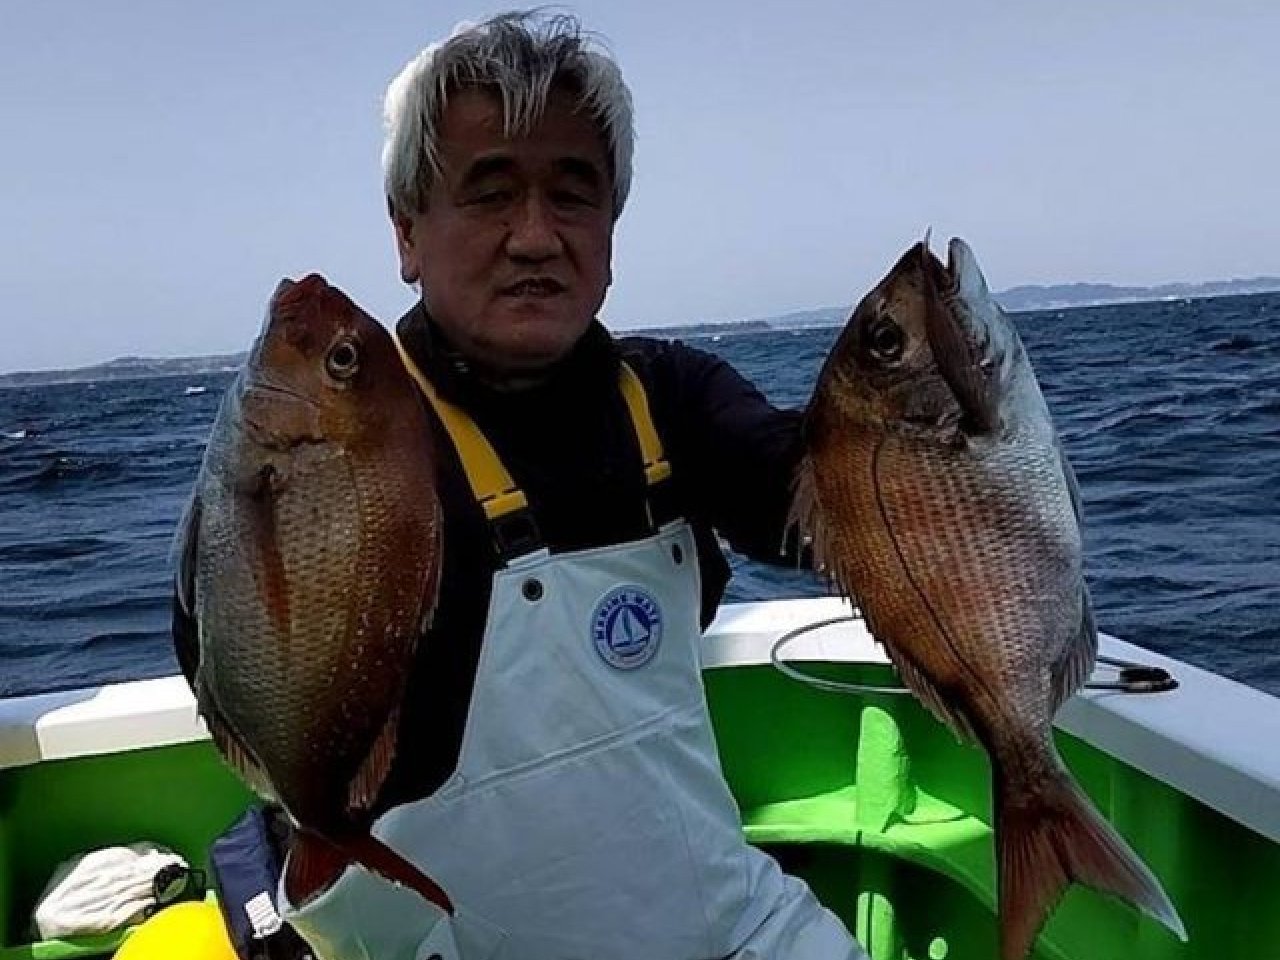 【釣果速報】神奈川県あまさけや丸で食べ頃サイズの良型1.5kgマダイ上がる！全員マダイゲット達成！仲間と新しいターゲットを狙った釣りに挑戦しませんか？